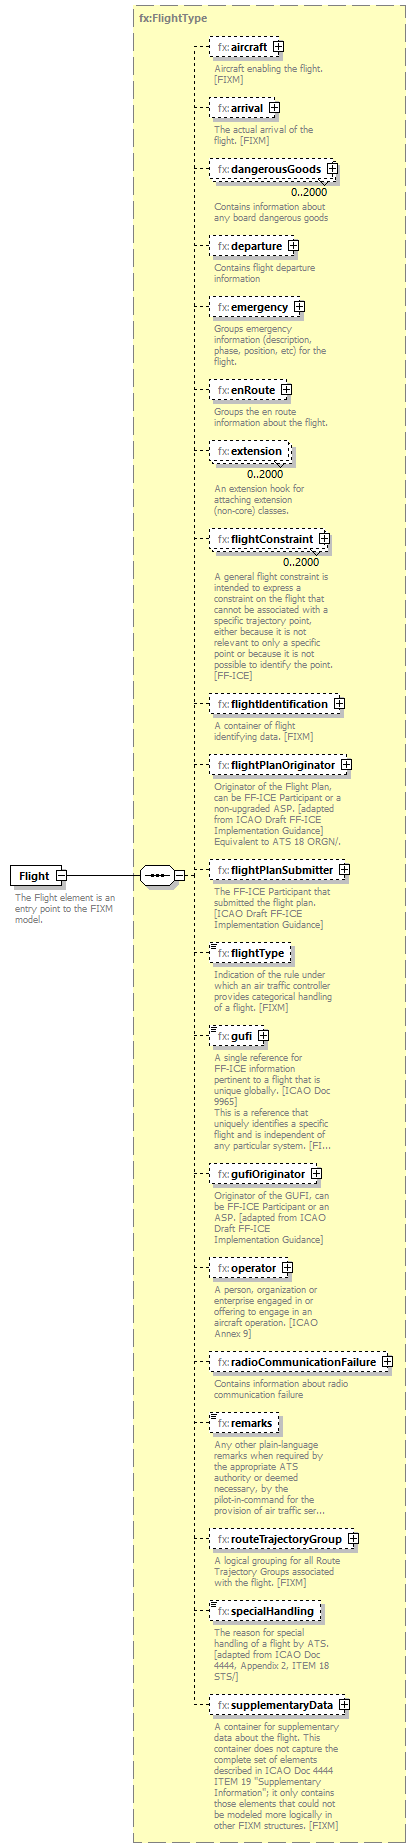 Fixm_diagrams/Fixm_p315.png